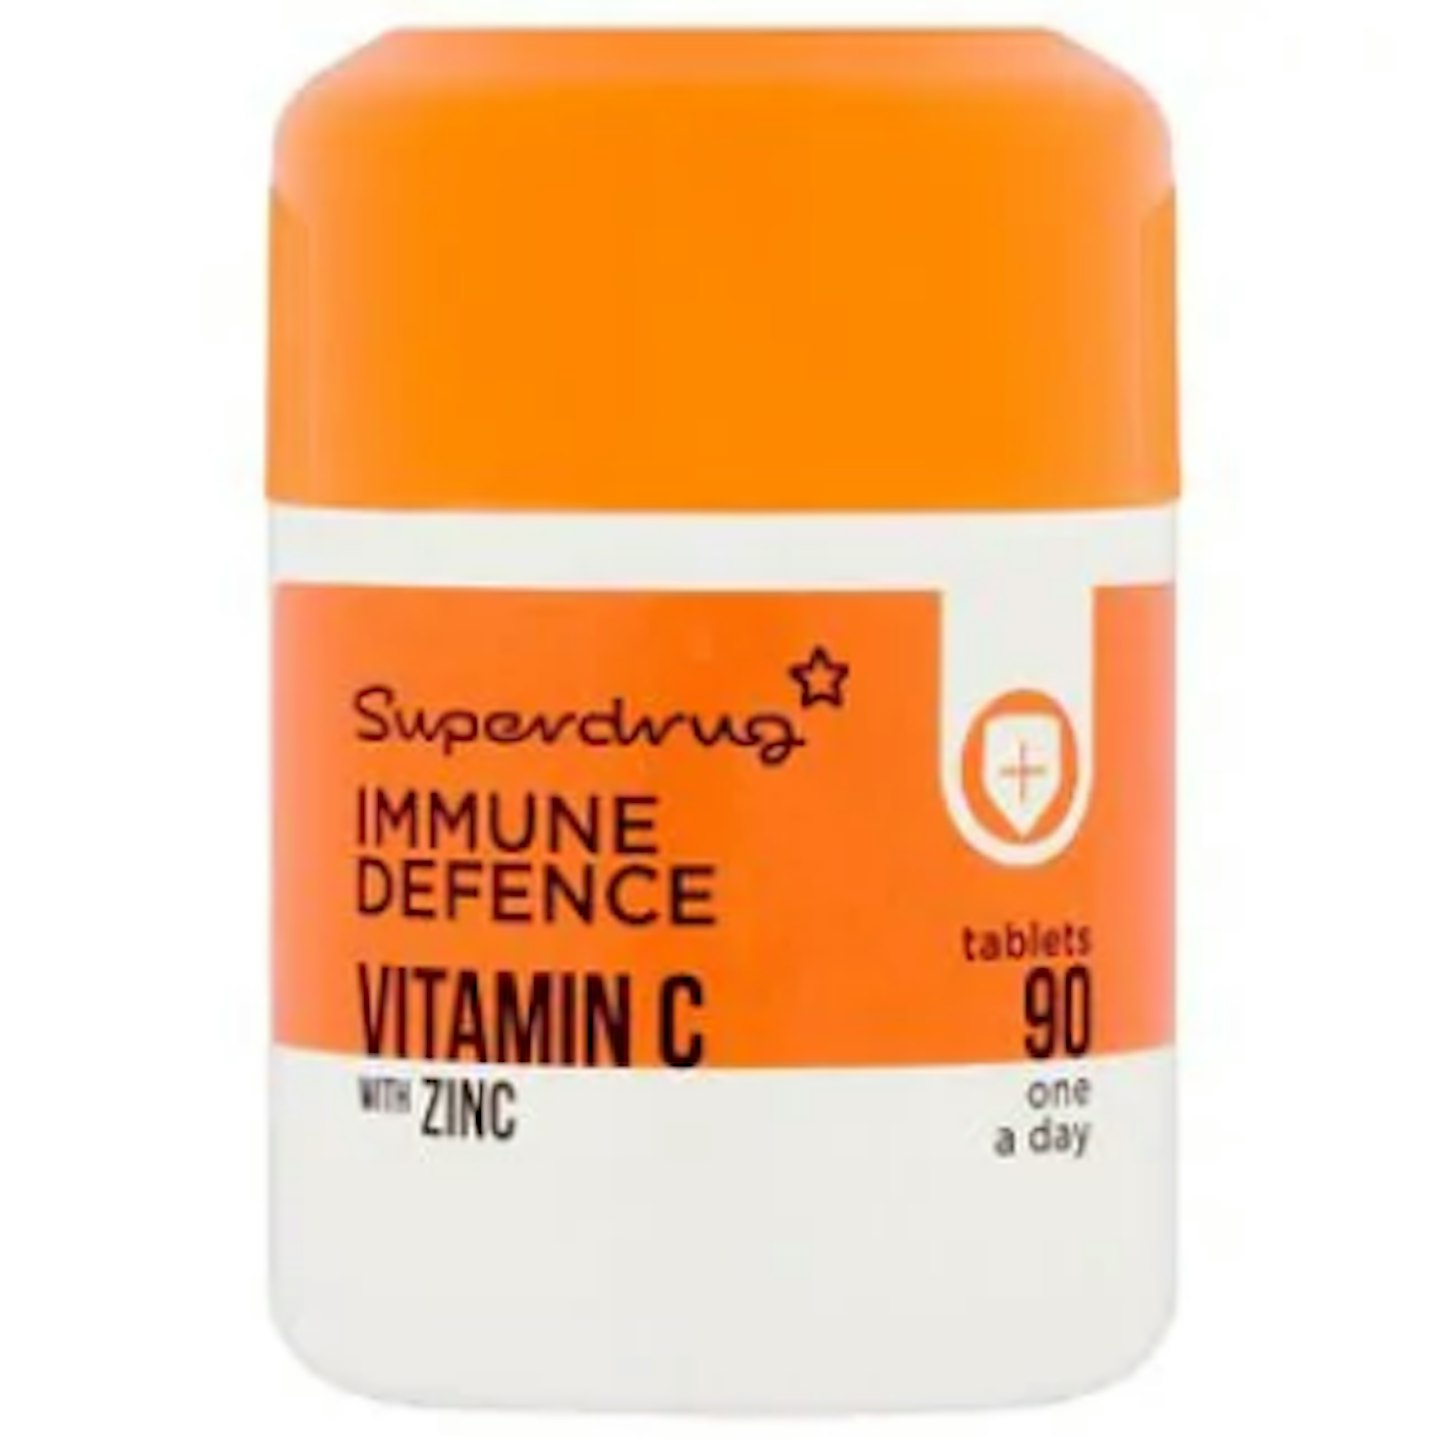 Superdrug Vitamin C With Zinc Tablets, £4.99